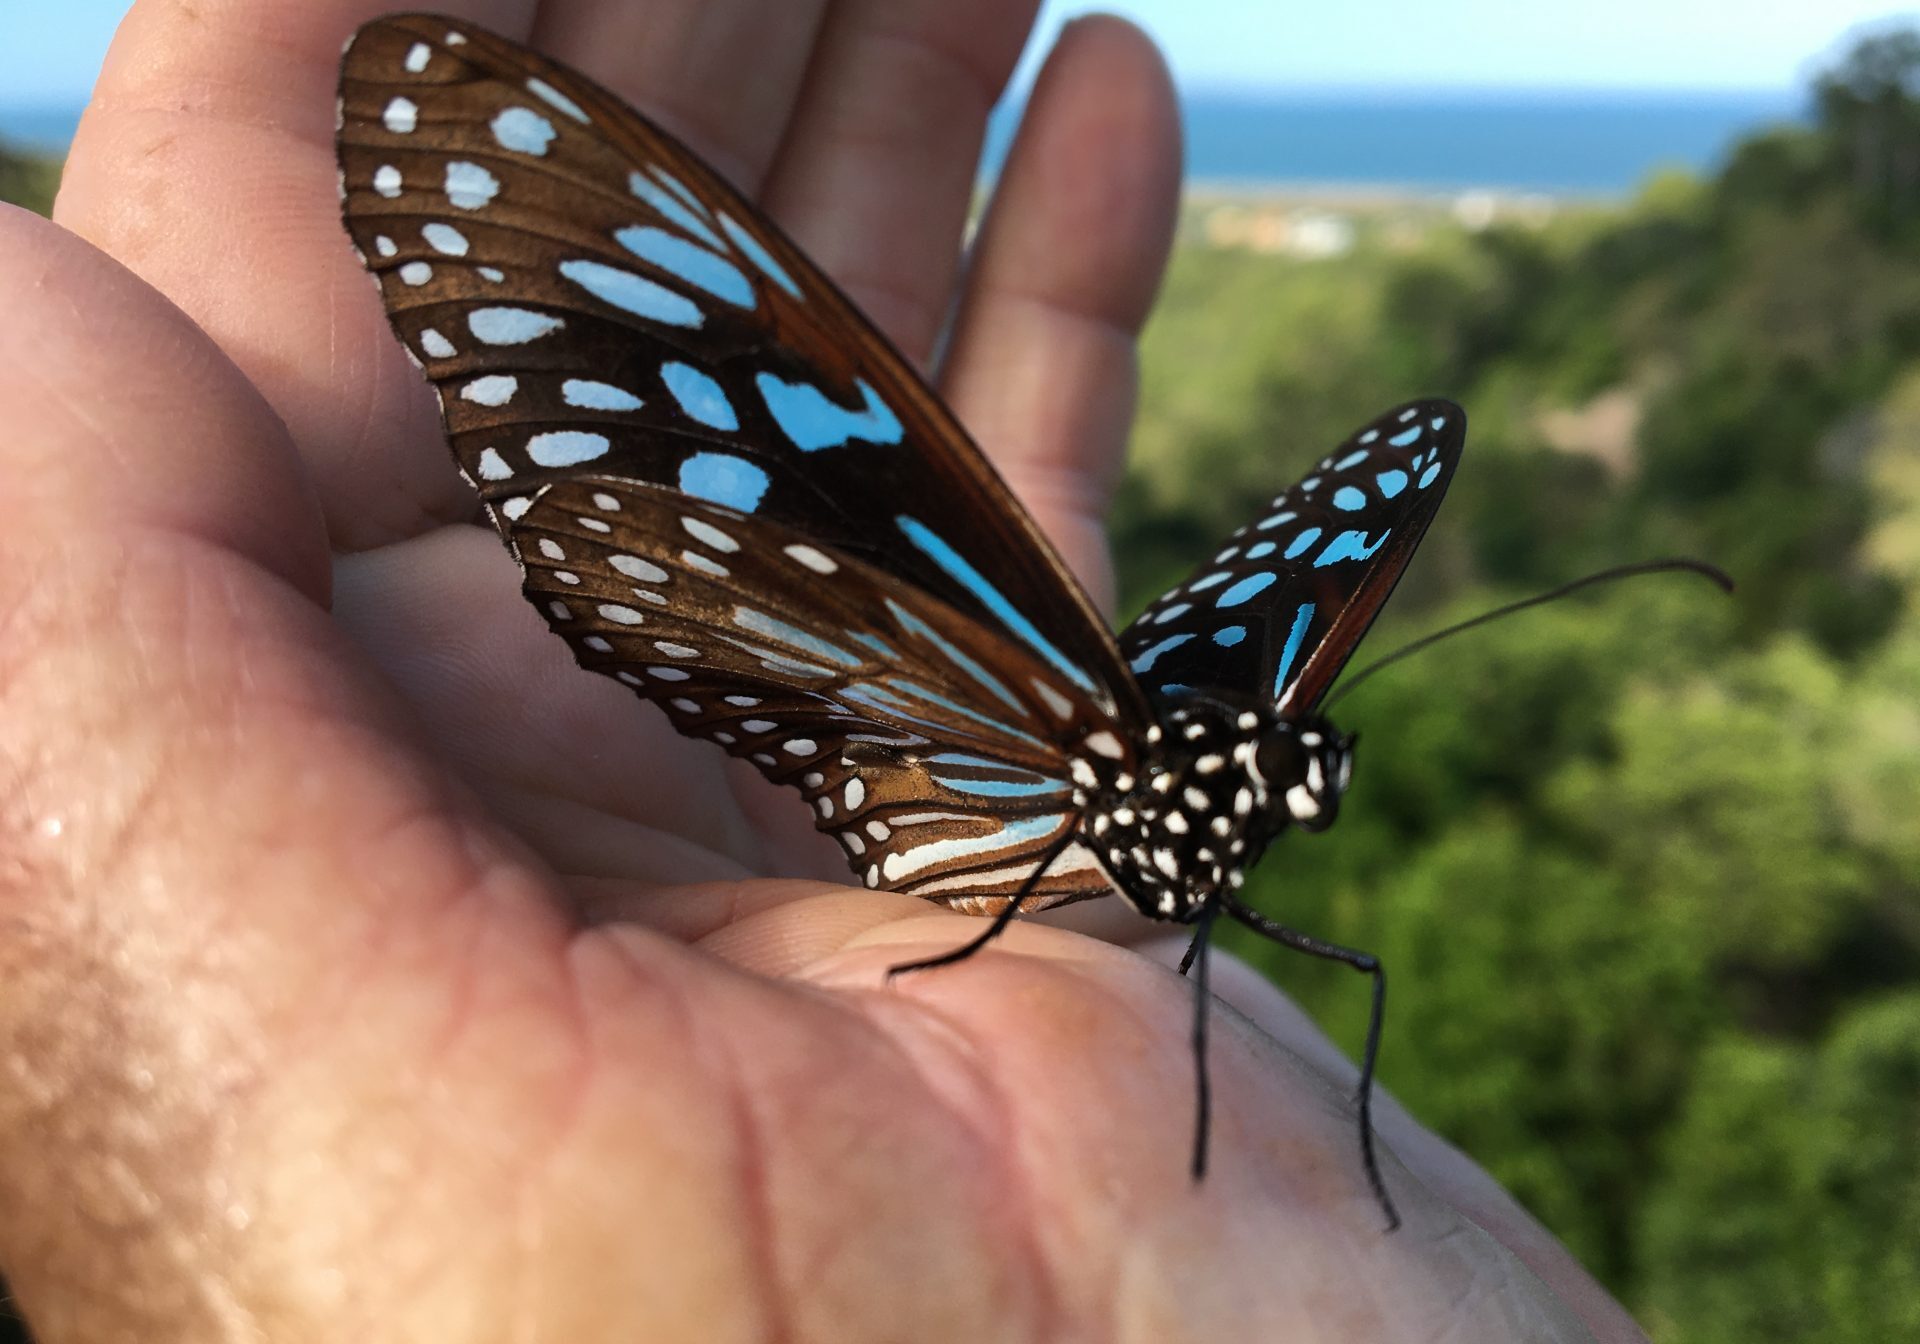 A “Blue Tiger” butterfly – “A good omen!”